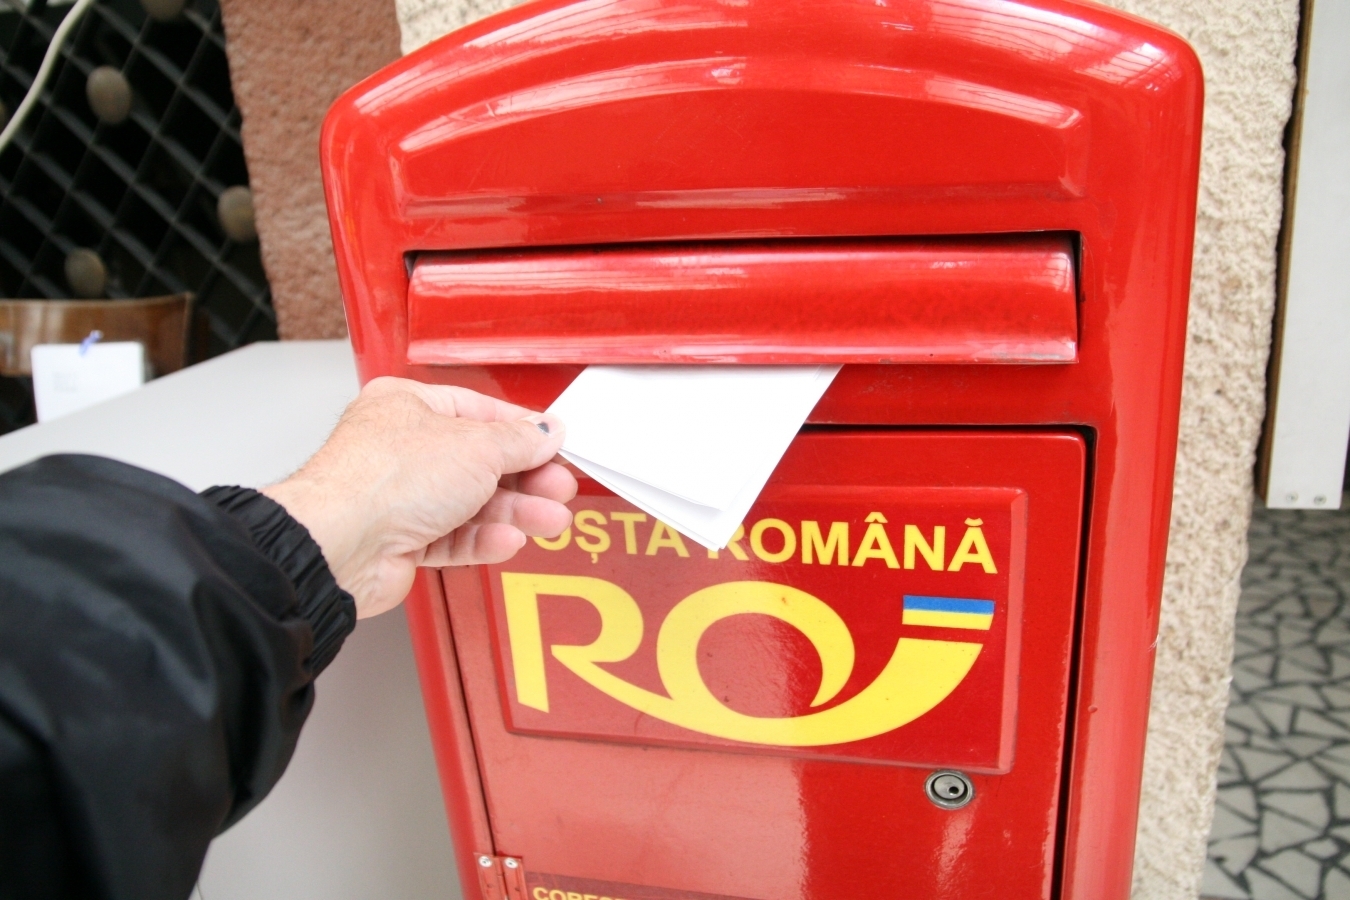 Directorul Poştei Române, întrebat cât face o scrisoare de la Bucureşti la Braşov: Cinci zile. Sunt reglementările ANCOM / Trimiterea de scrisori de către persoane fizice, aproape inexistentă